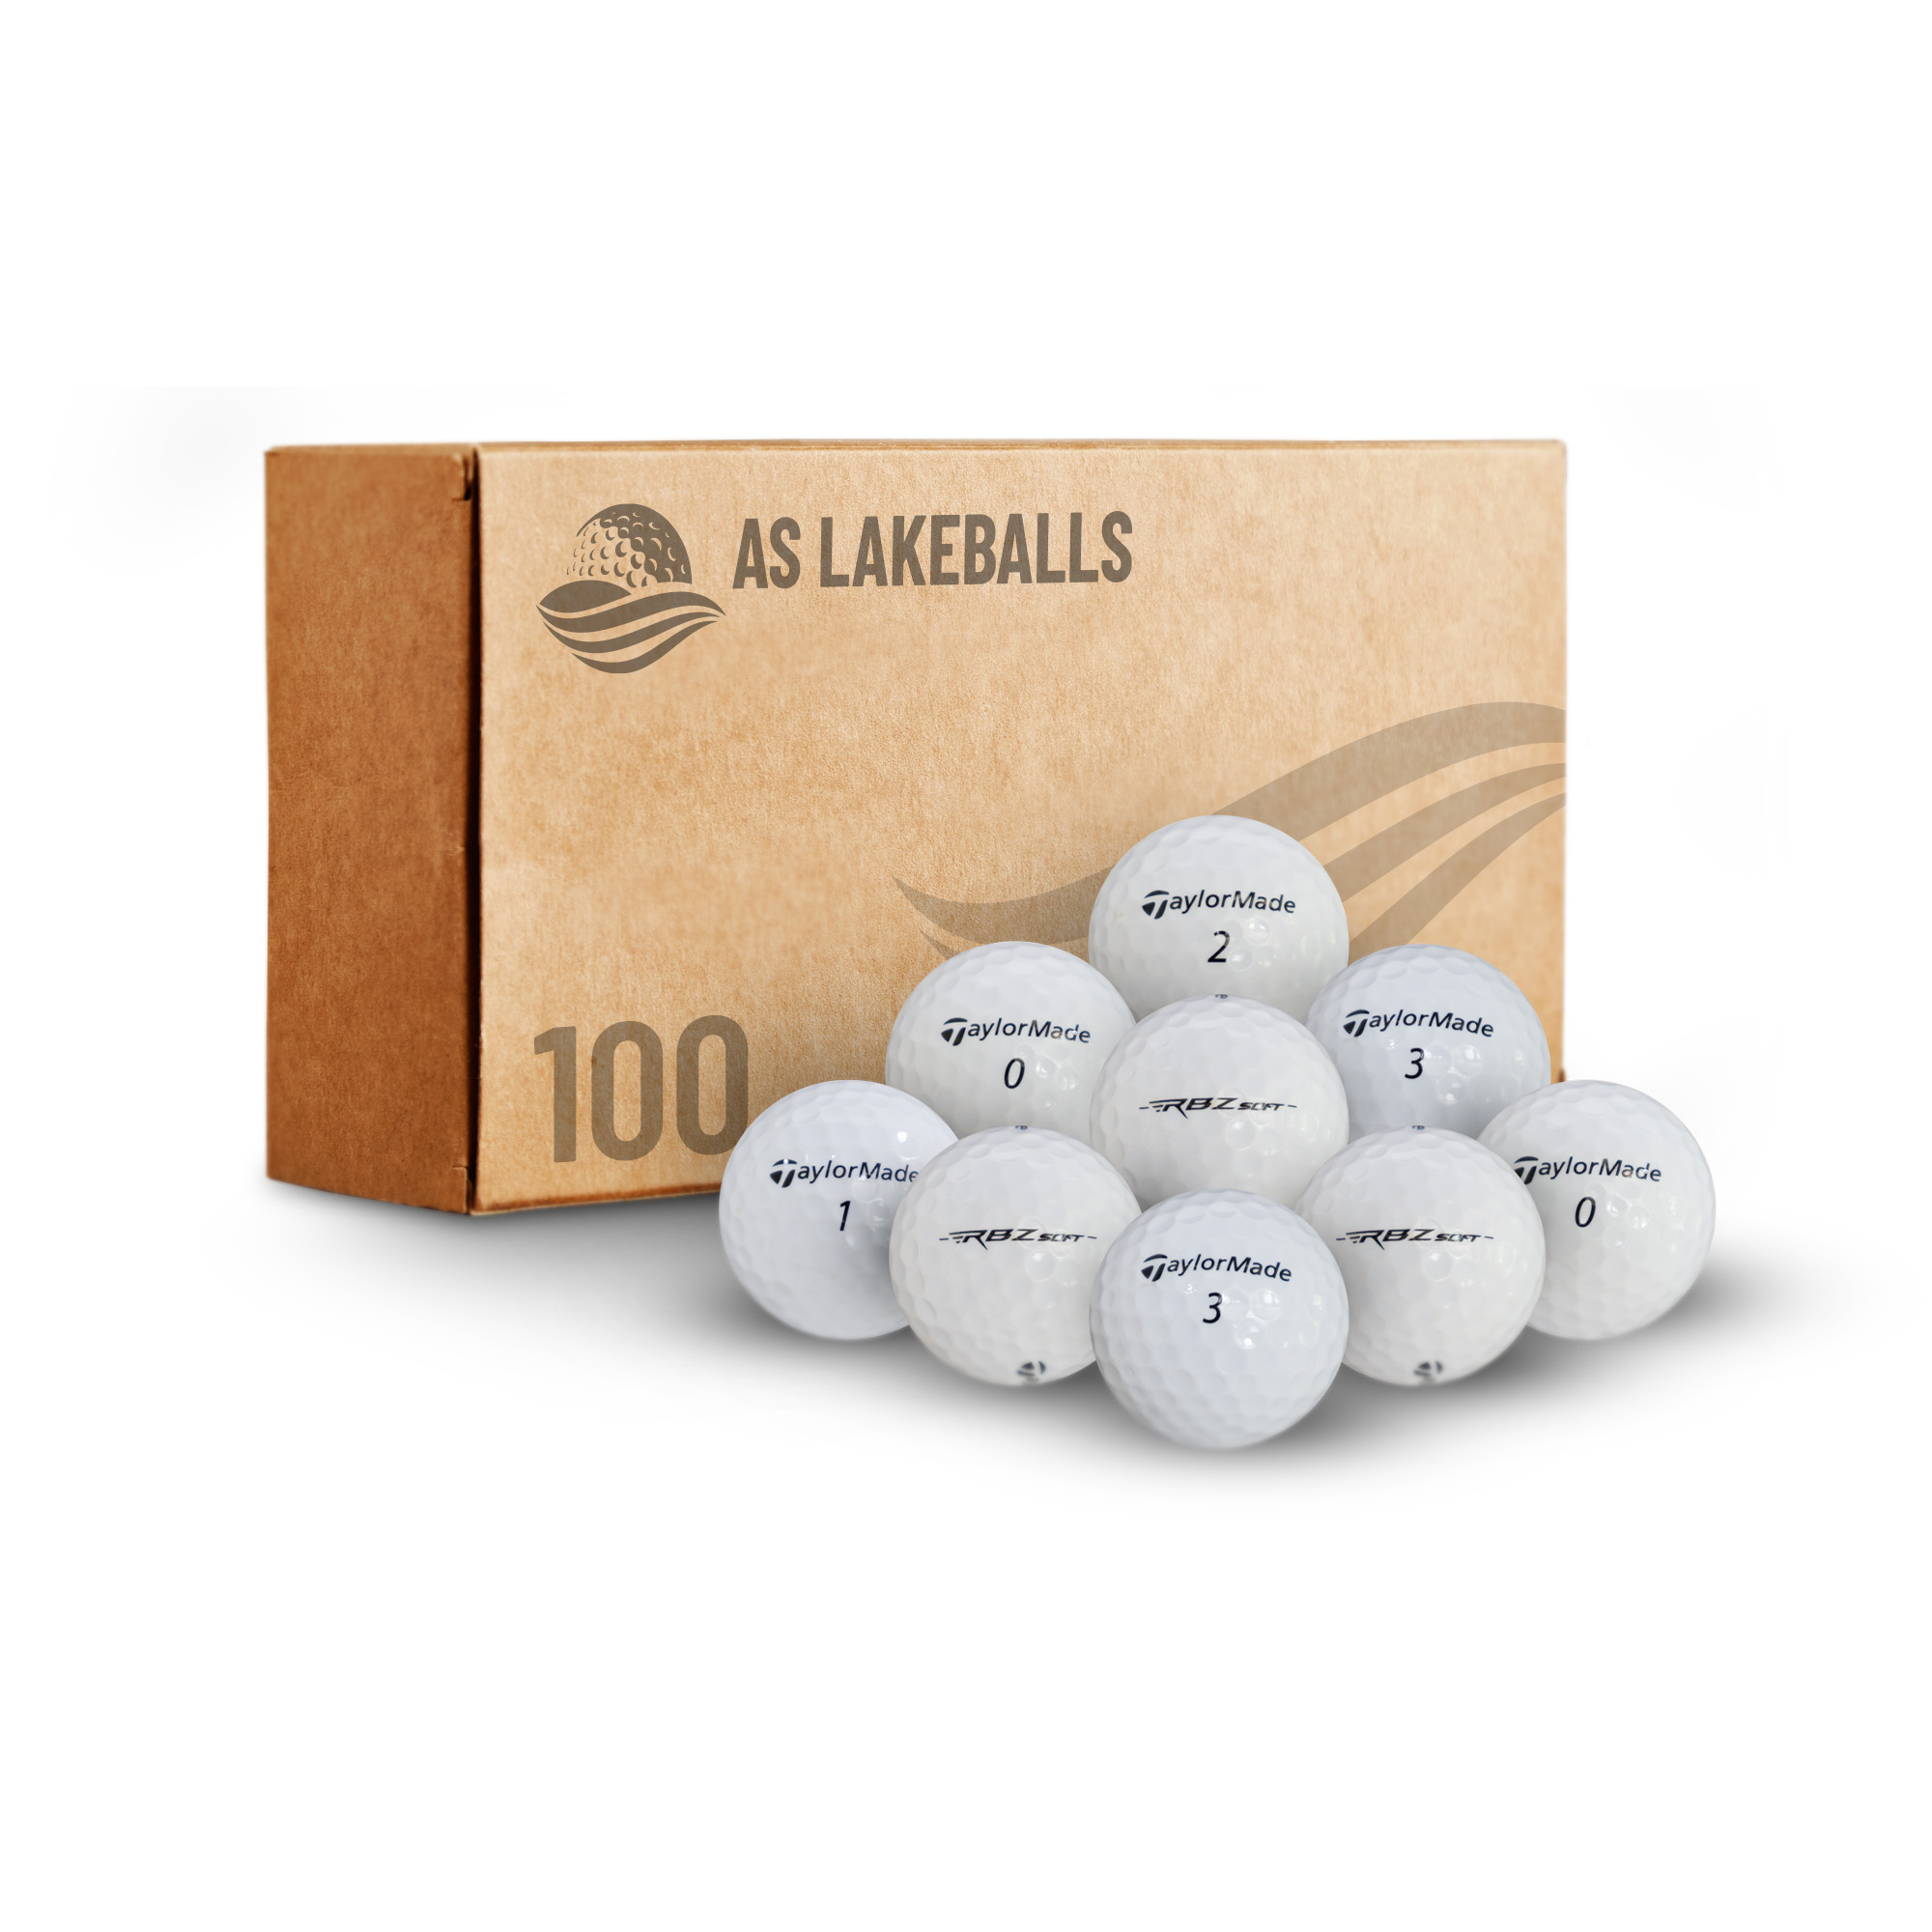 100 Stück Taylor Made RBZ AAA-AA Lakeballs bei AS Lakeballs günstig kaufen